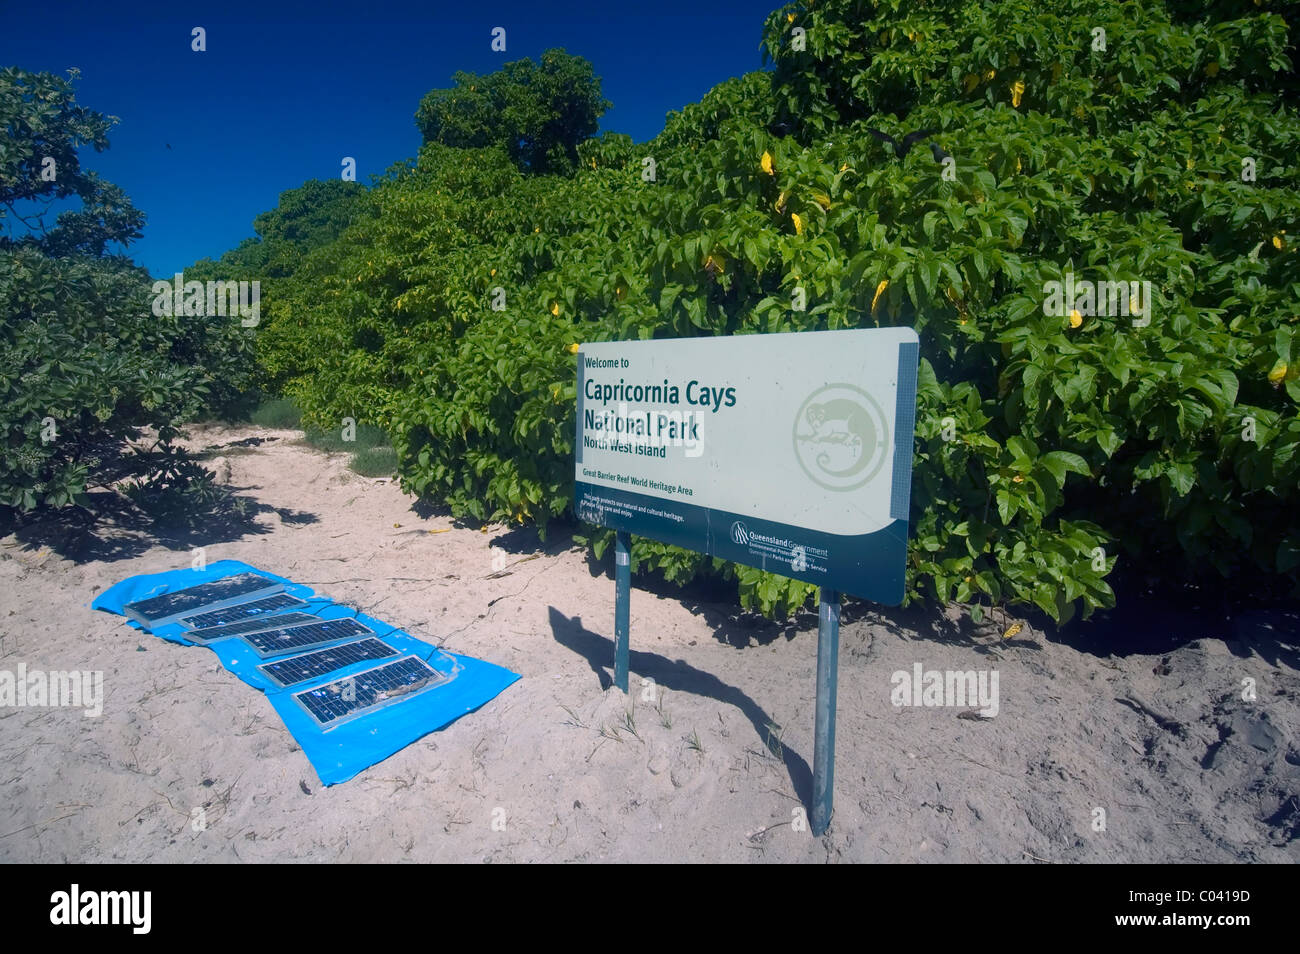 Pannelli solari in carica camping frigoriferi, North West Island, Capricornia Cays National Park, della Grande Barriera Corallina, Australia Foto Stock